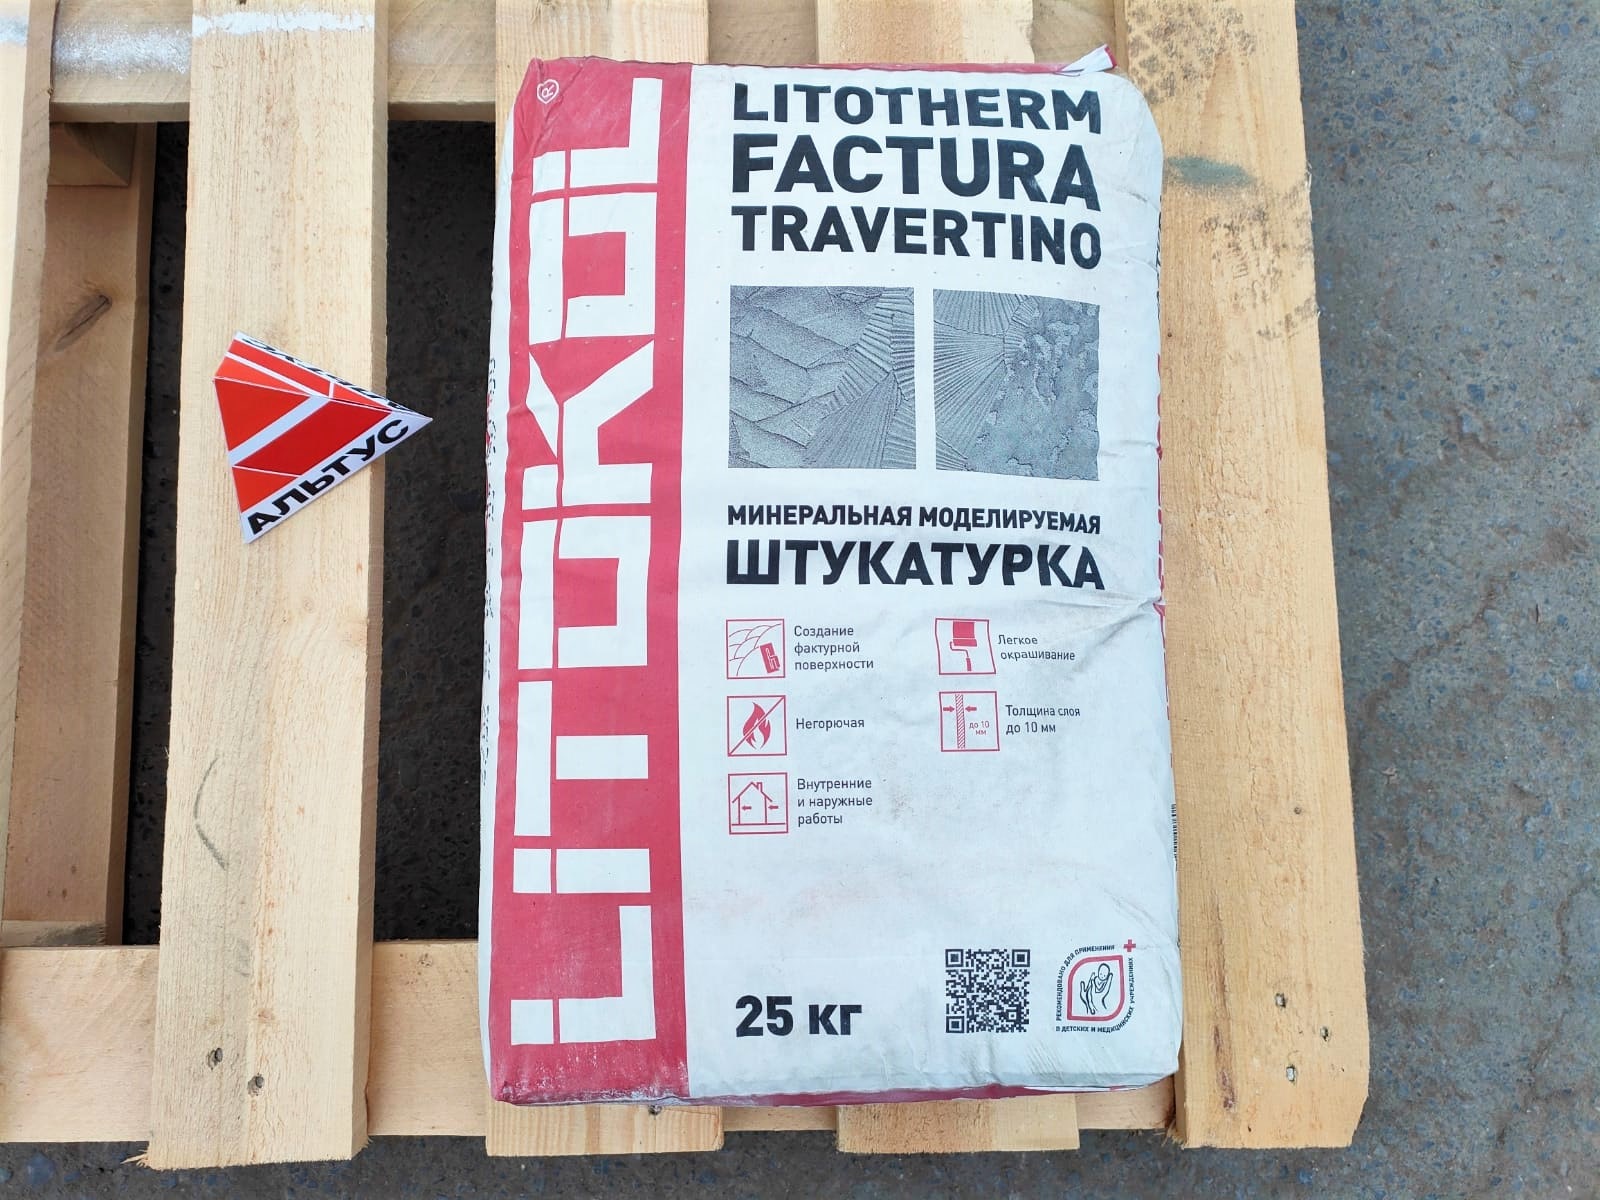 Штукатурка минеральная моделируемая LITOTHERM Factura Travertino 25 кг